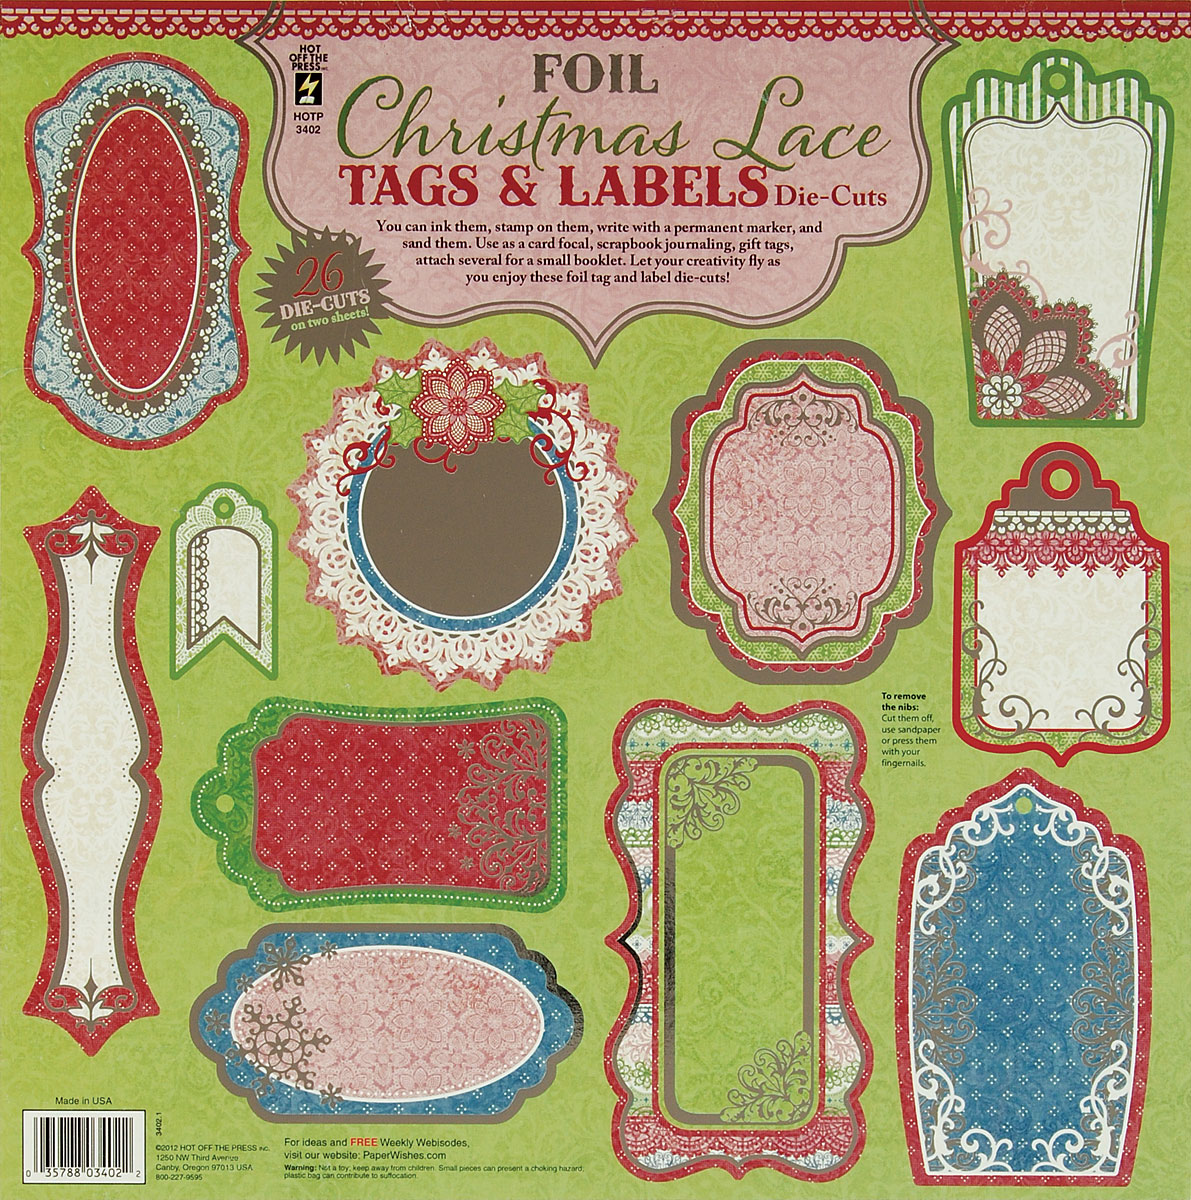 Christmas Lace Foil Tags & Labels